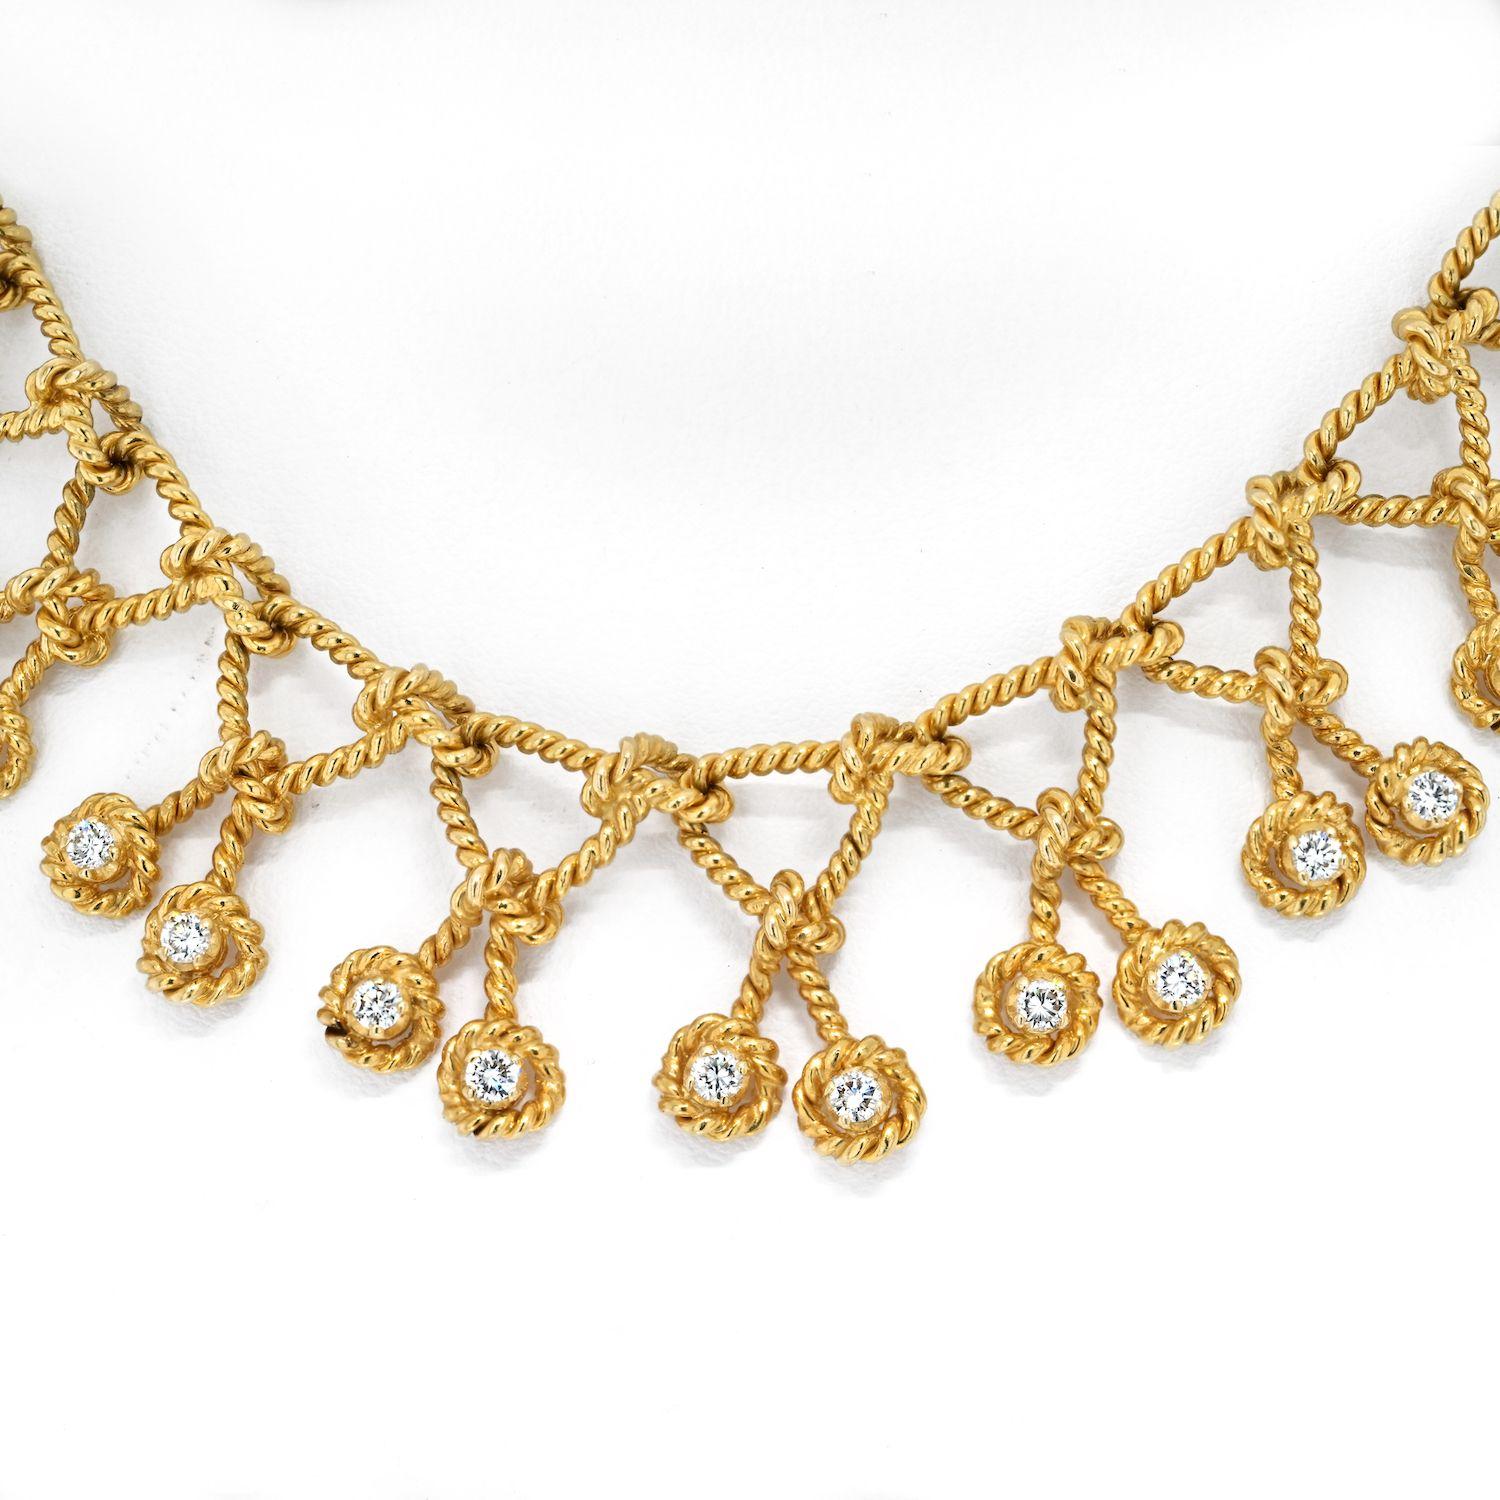 gold dog chain collar